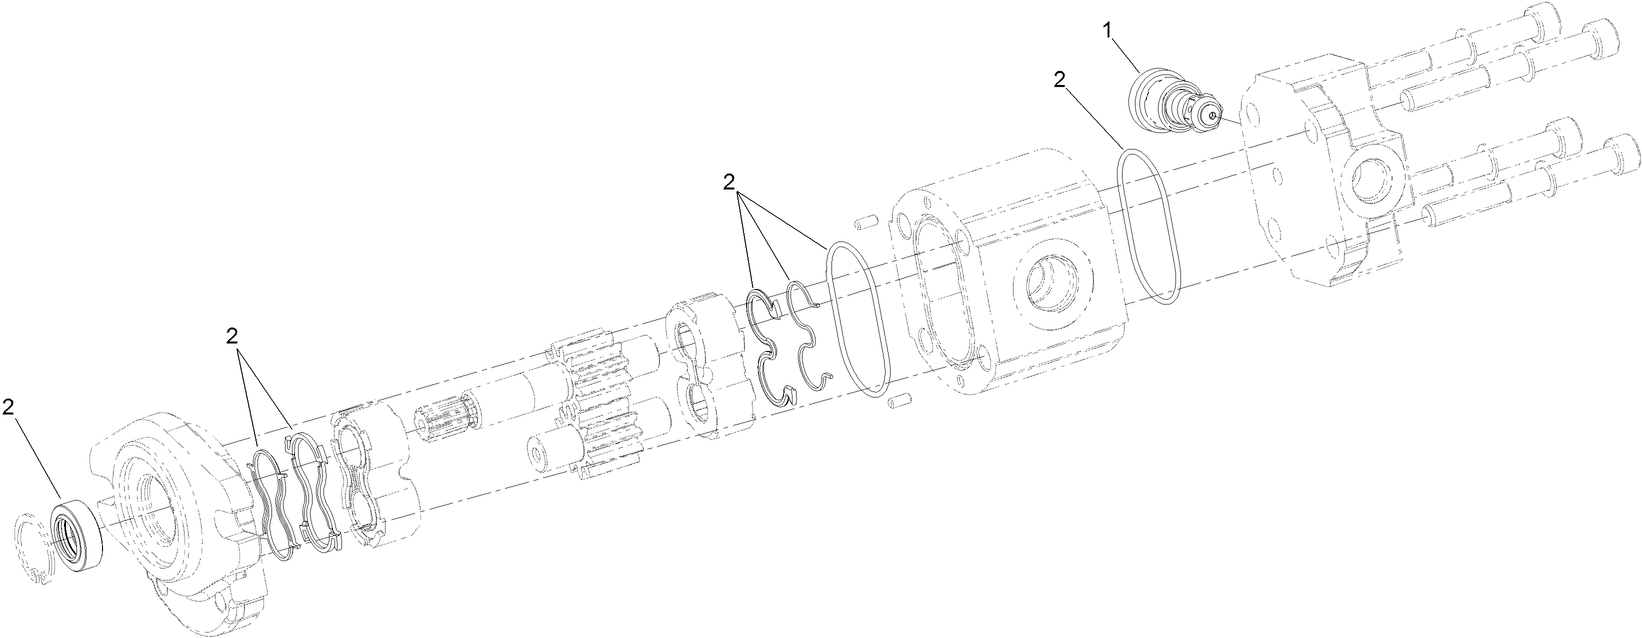 Hydraulic Gear Pump Assembly No. 112-9542